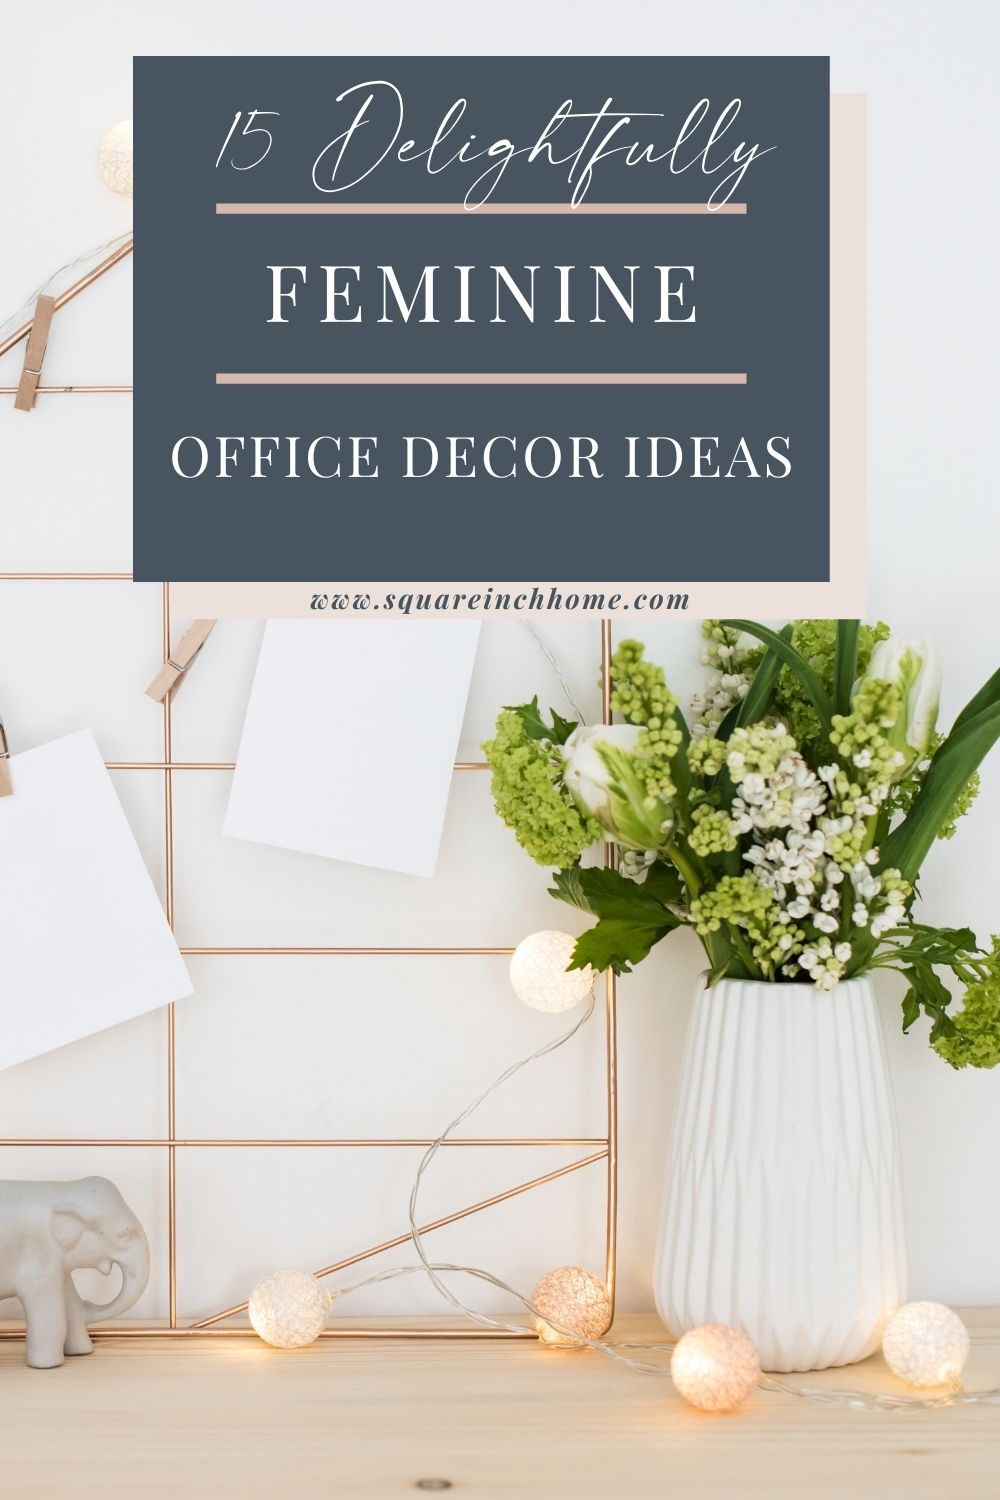 feminine office decor ideas pinterest